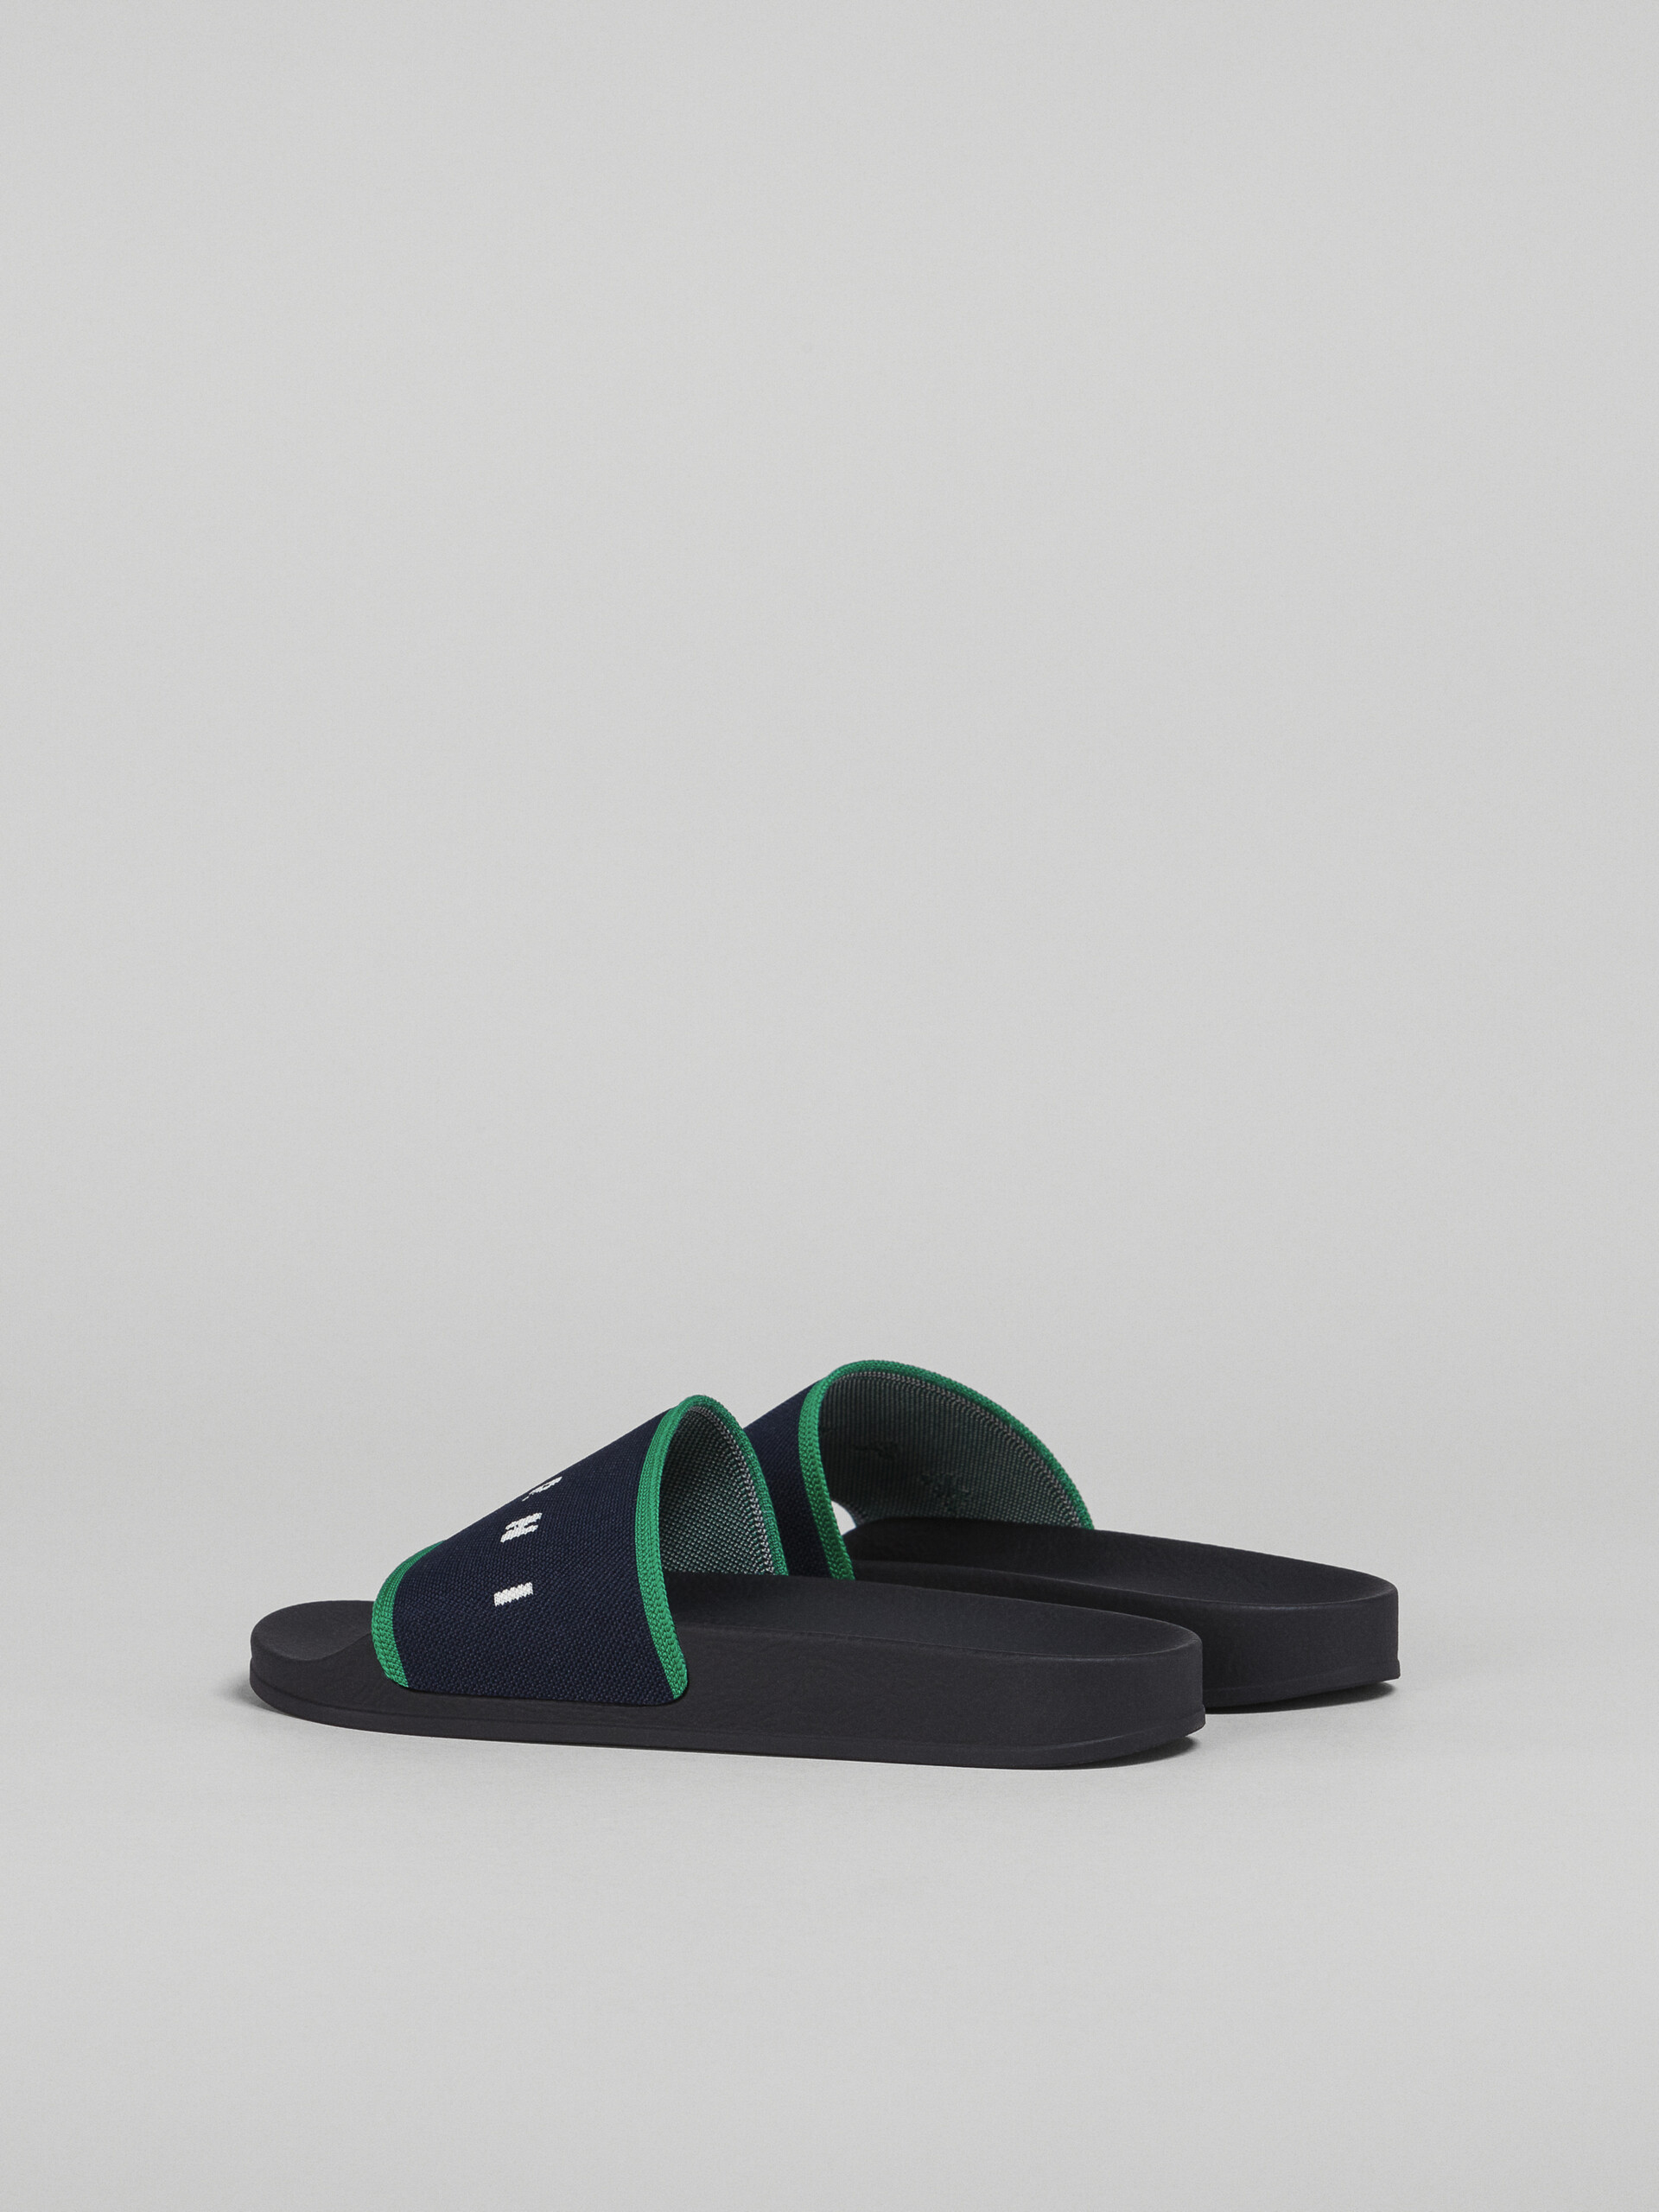 Blueblack and green stretch logo jacquard slide - Sandals - Image 3